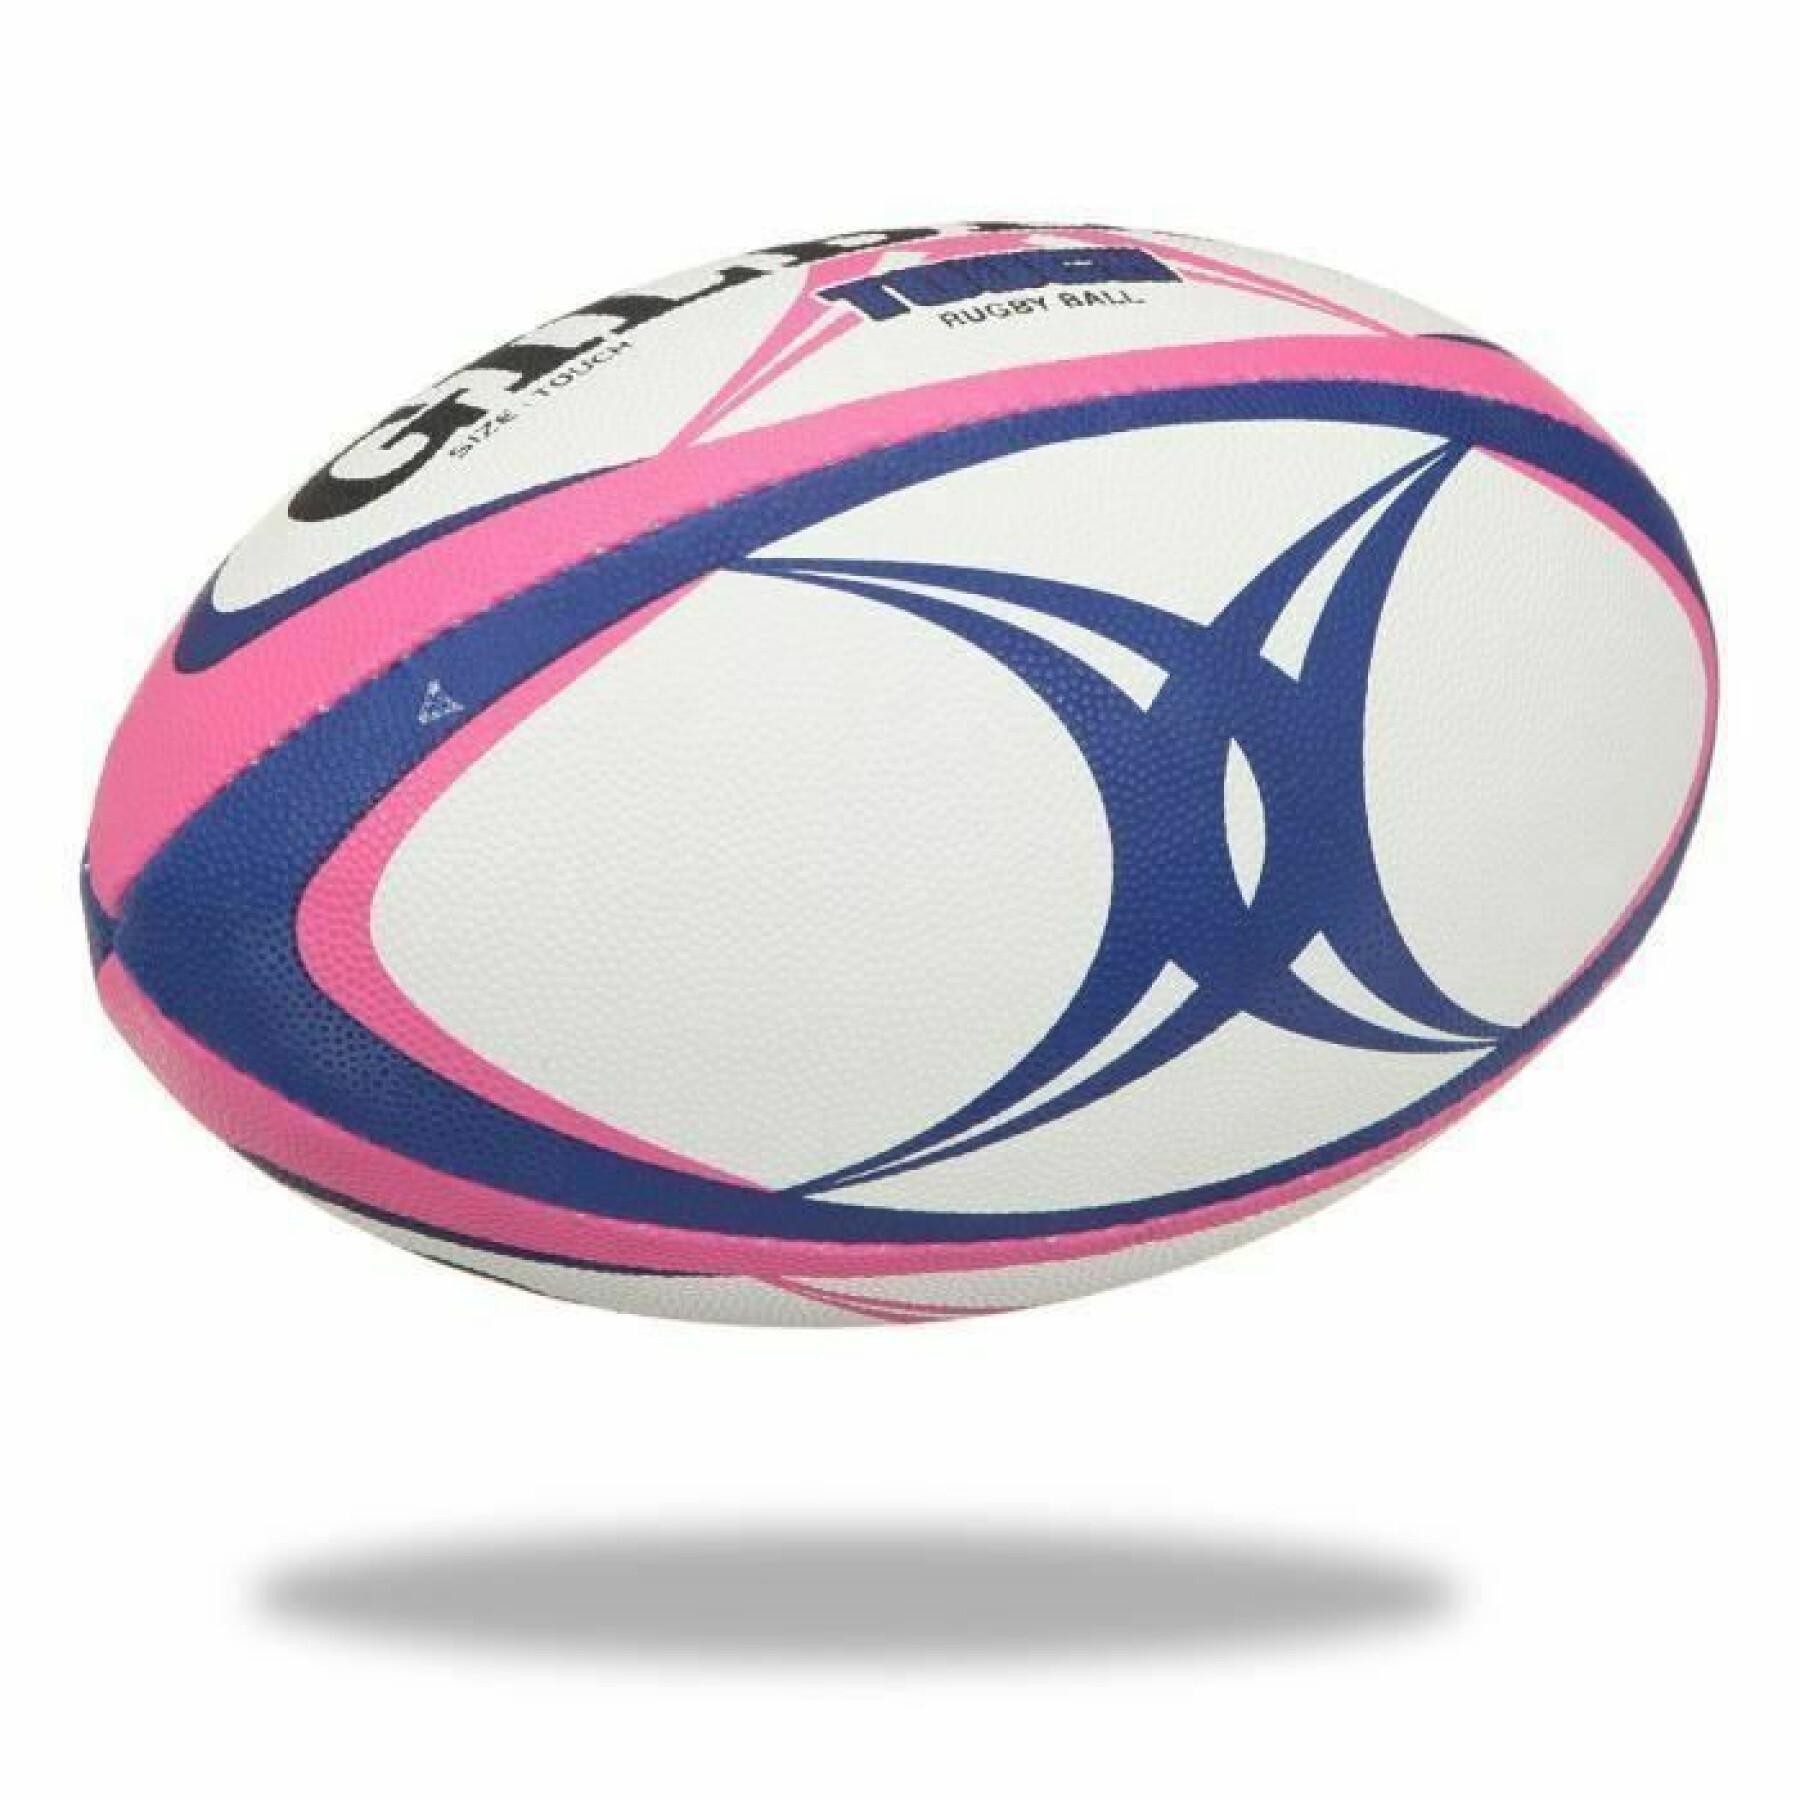 Pallone de rugby Gilbert Touch (misura 4)